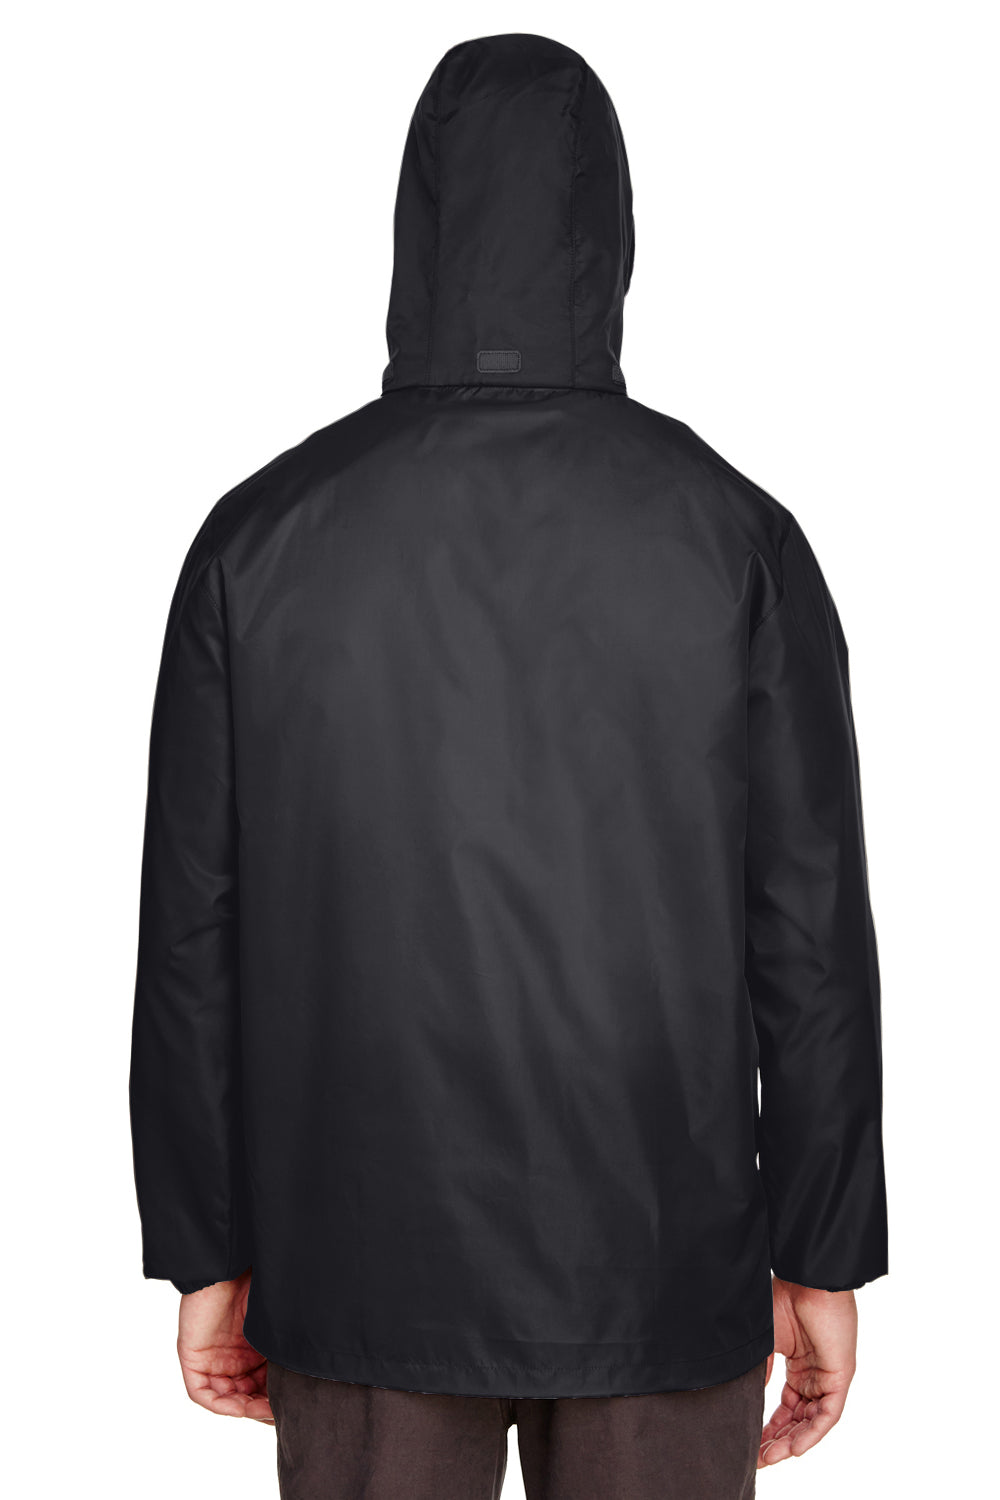 Team 365 TT73 Mens Zone Protect Water Resistant Full Zip Hooded Jacket Black Back